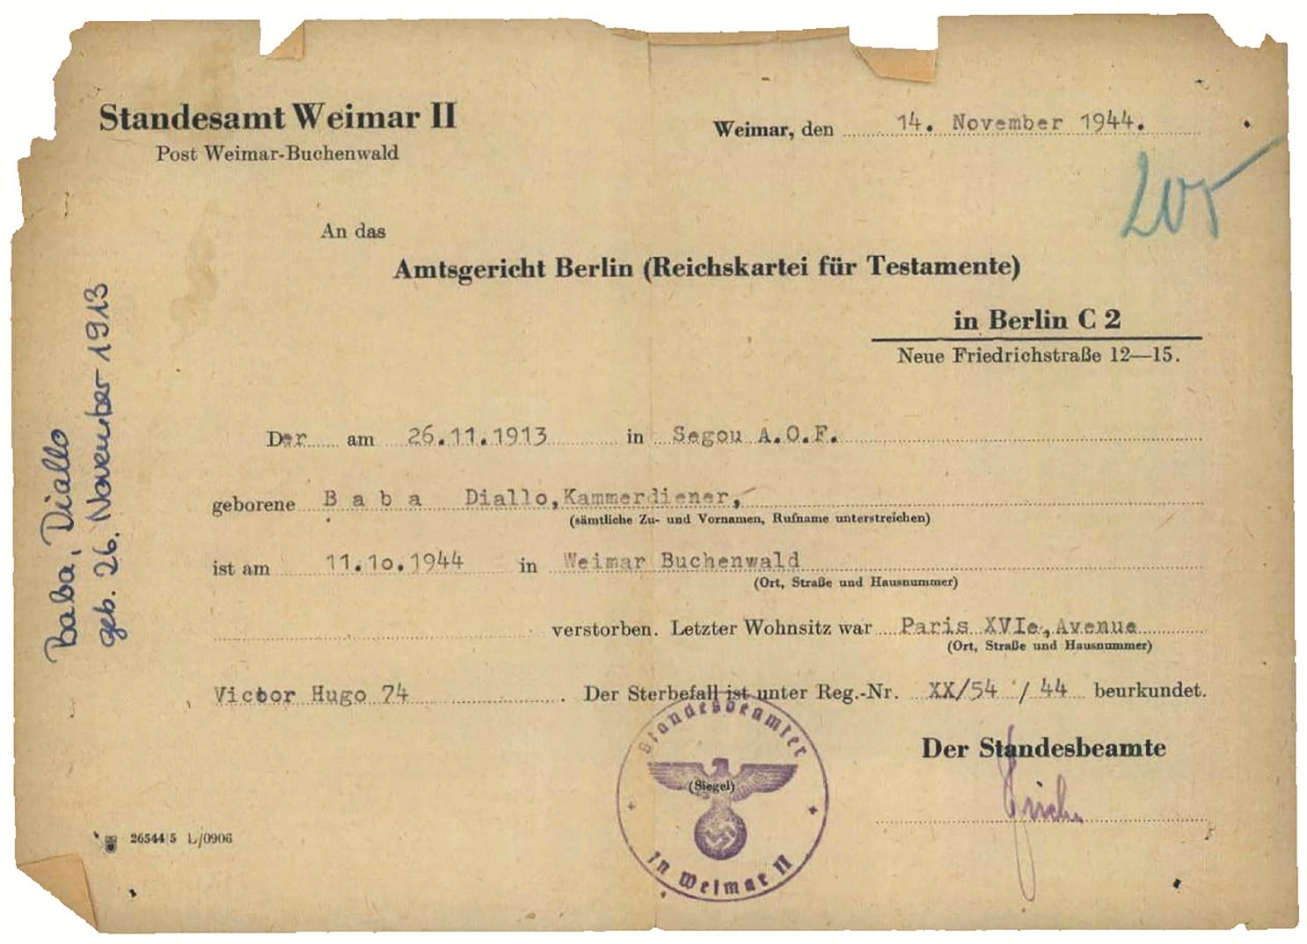 Das „Standesamt Weimar II. Post Weimar-Buchenwald“ einen Monat nach Baba Diallos Tod